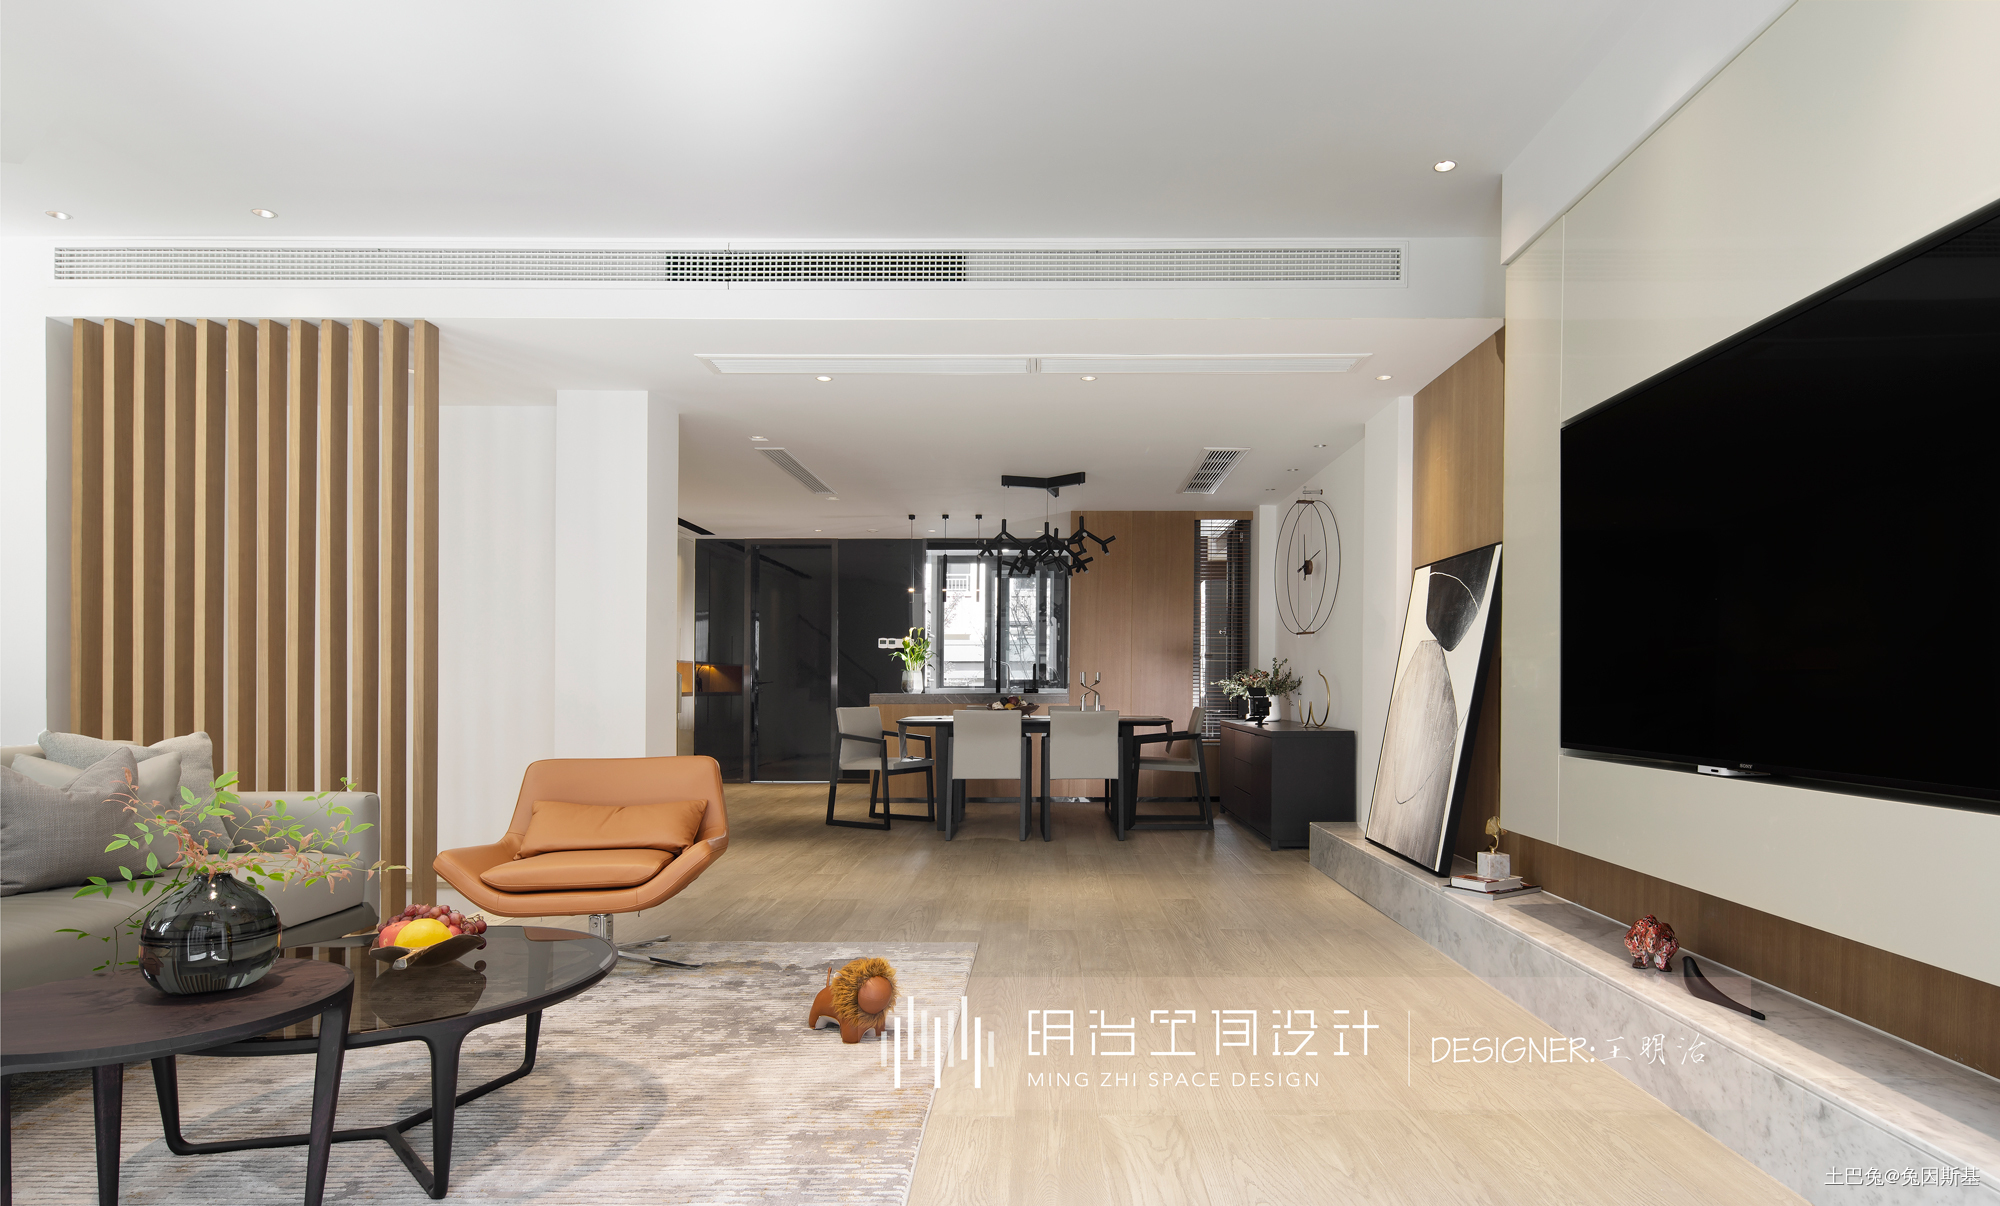 半木台式风格别墅设计现代简约客厅设计图片赏析